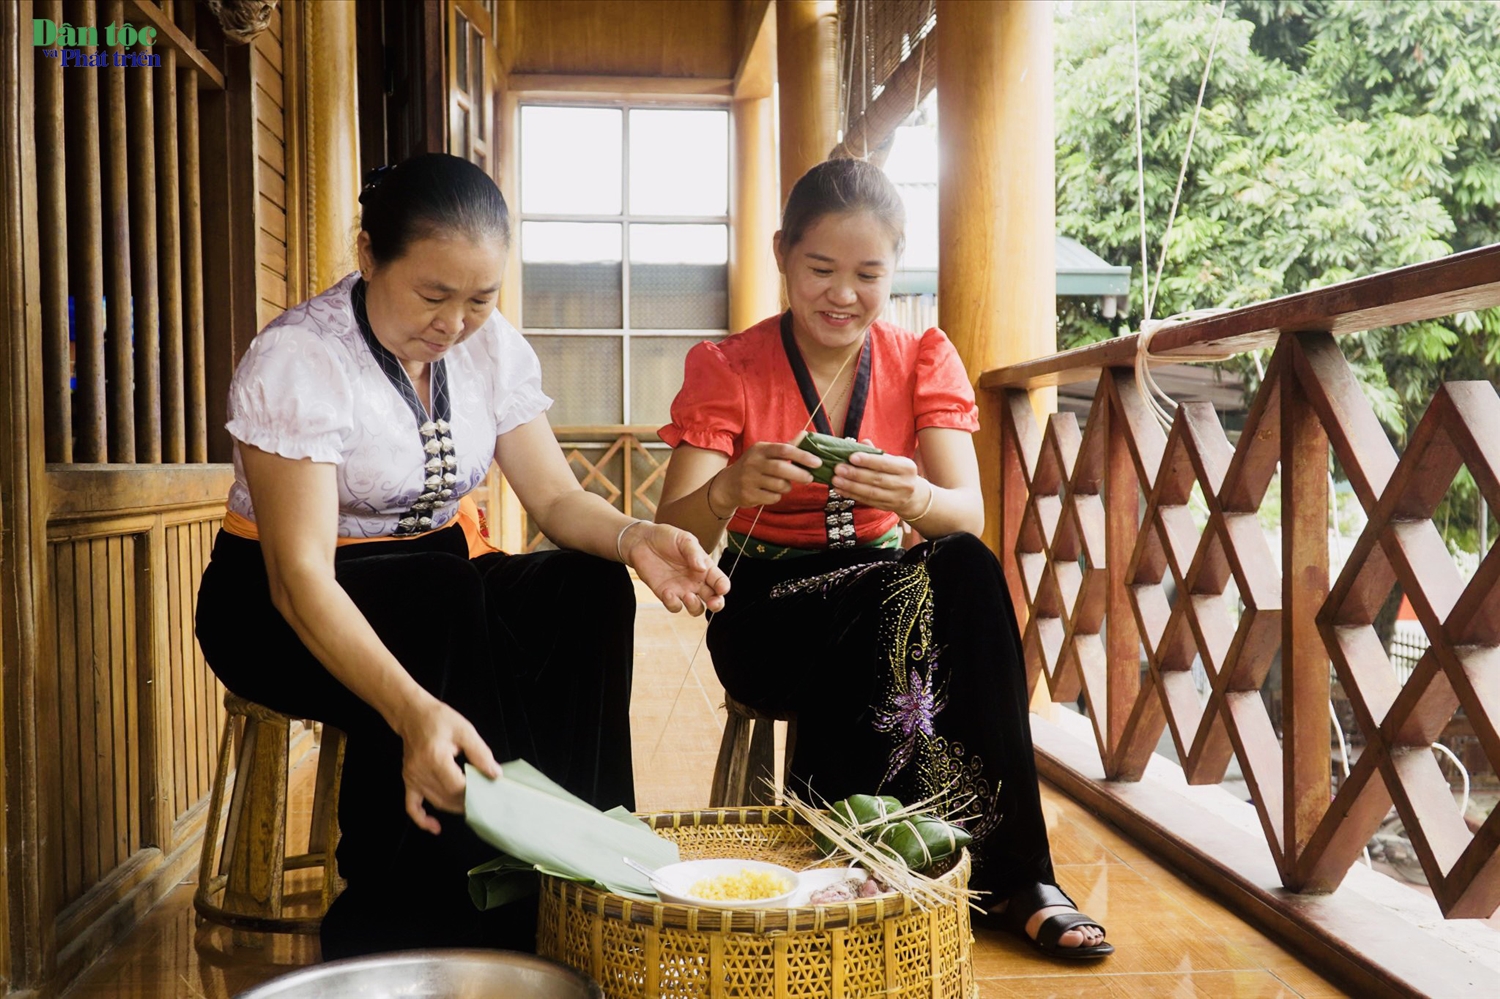 Tết “Xíp xí” cũng là dịp để người già truyền dạy cho thế hệ kế cận kiến thức ẩm thực truyền thống người Thái